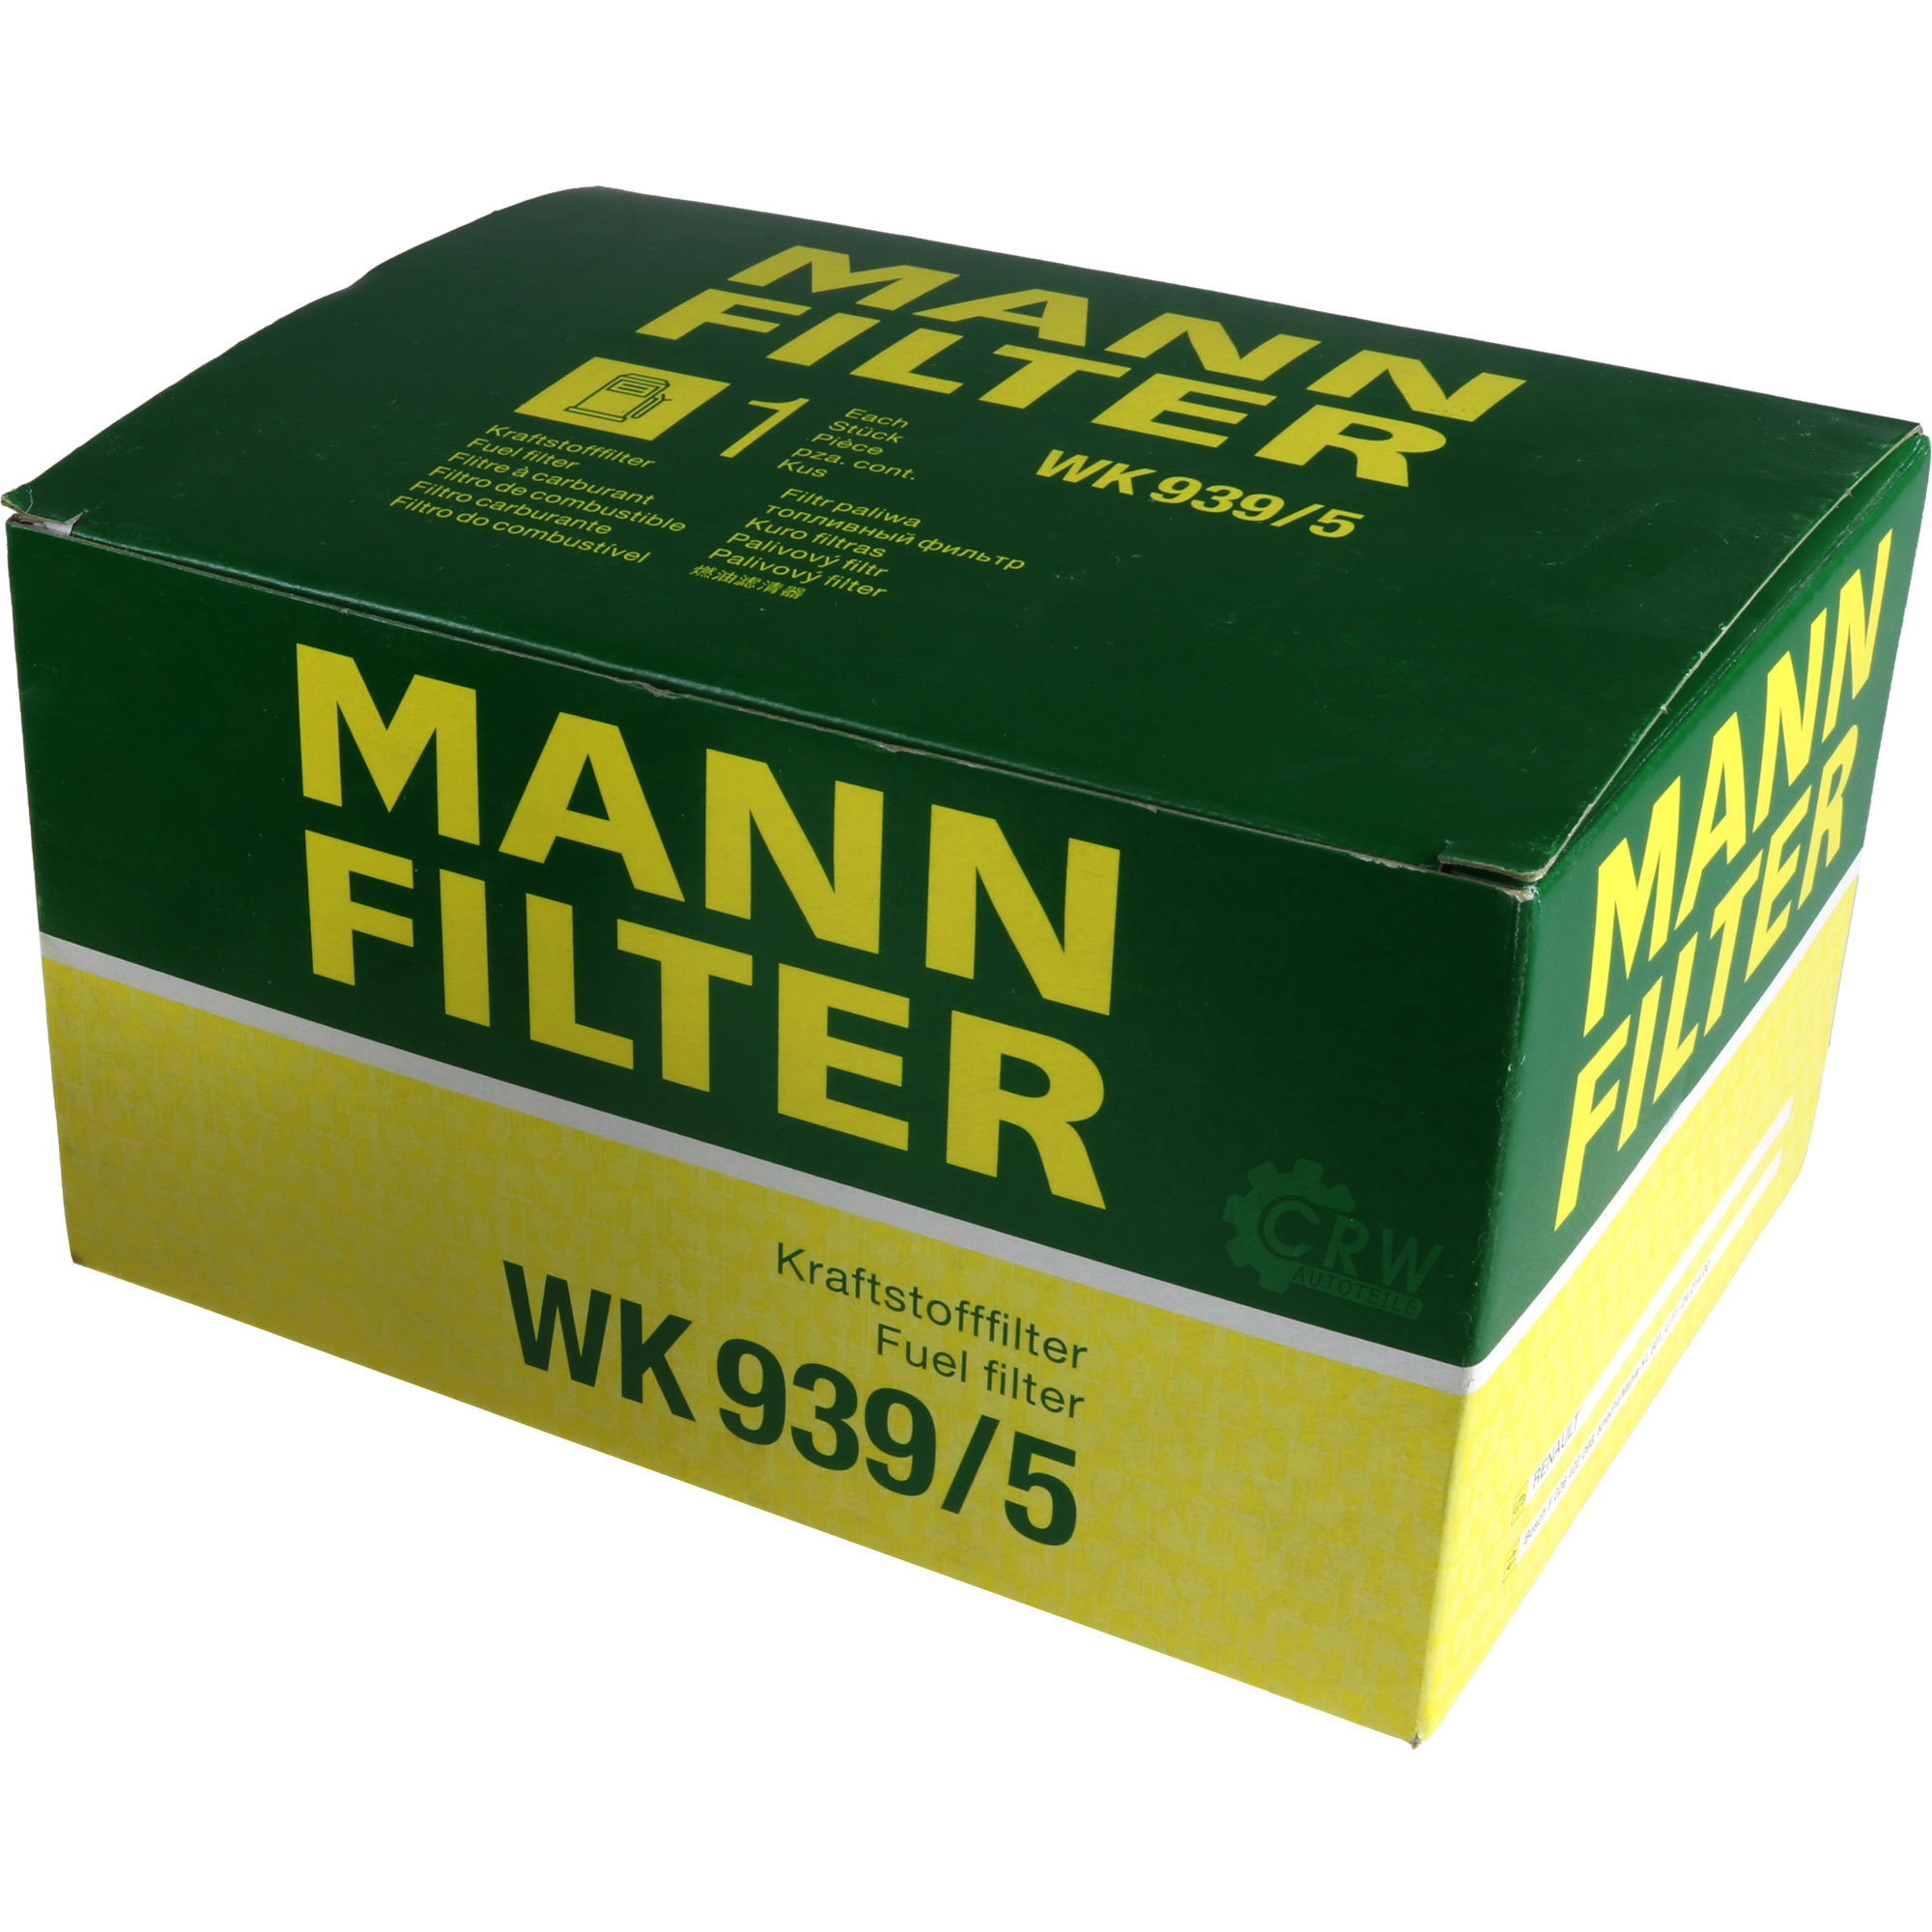 MANN-FILTER Kraftstofffilter WK 939/5 Fuel Filter